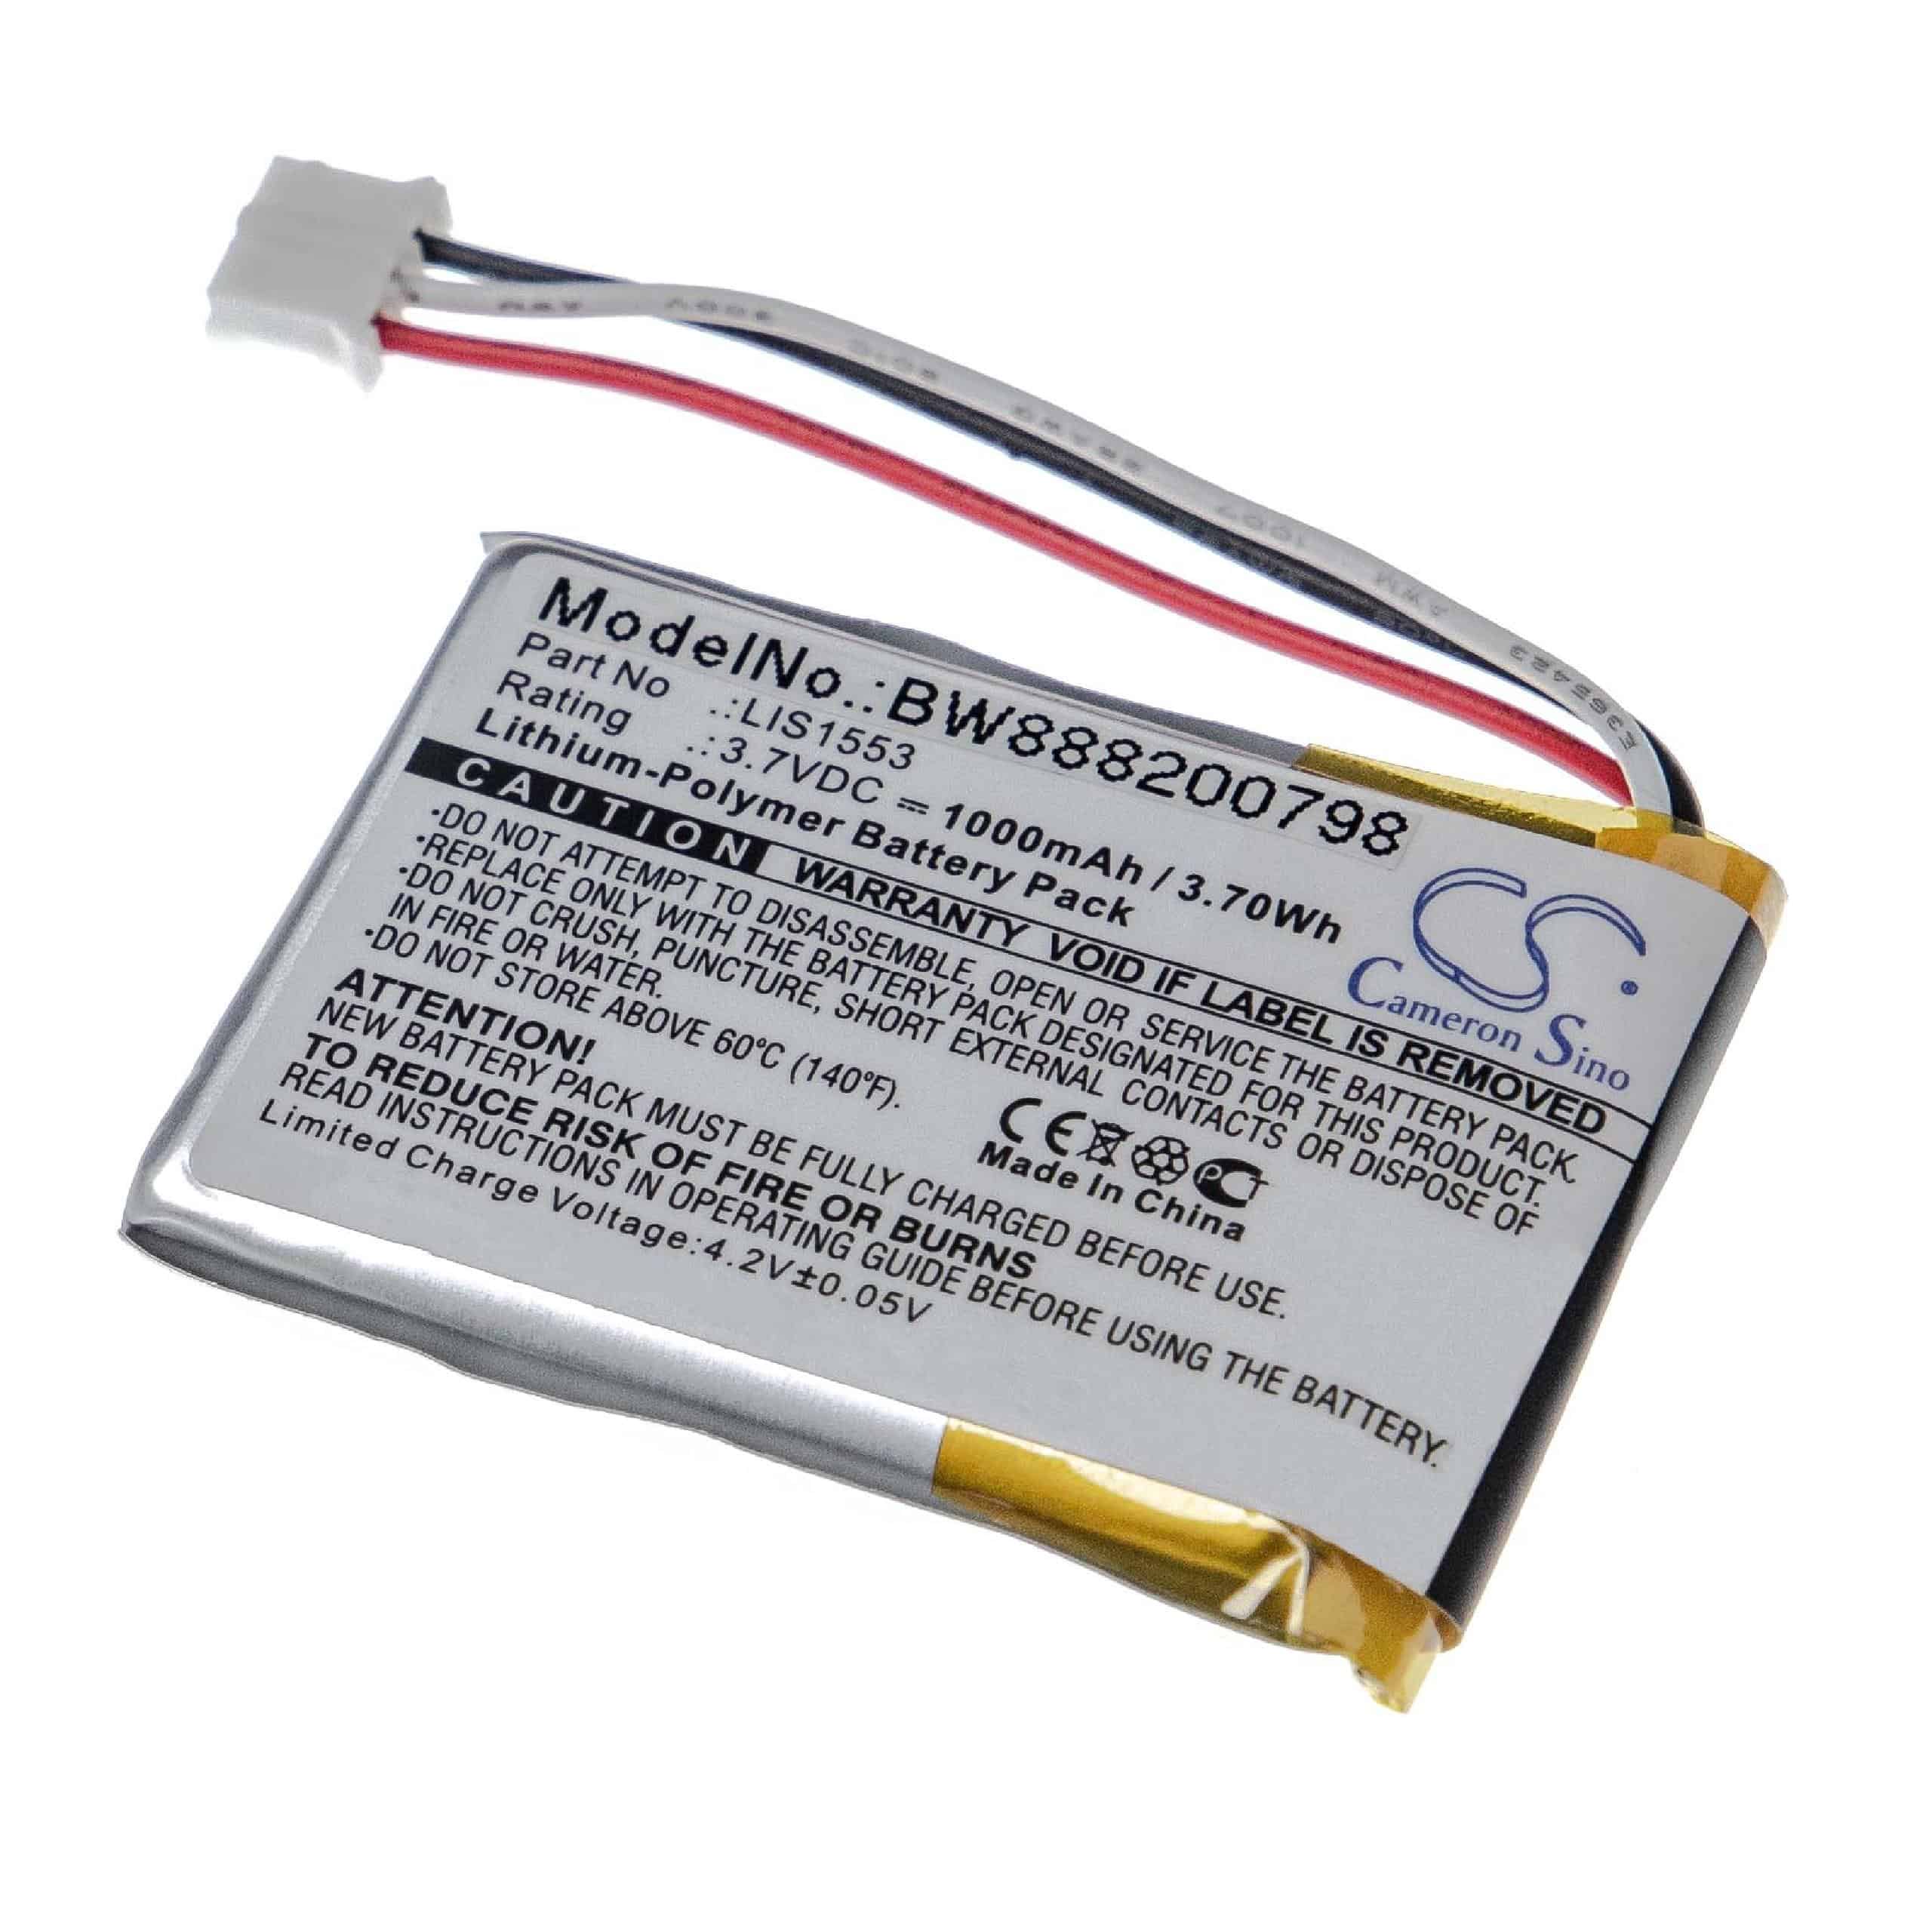 Akumulator do słuchawek bezprzewodowych zamiennik Sony LIS1553(SY6), LIS1553 - 1000 mAh 3,7 V LiPo